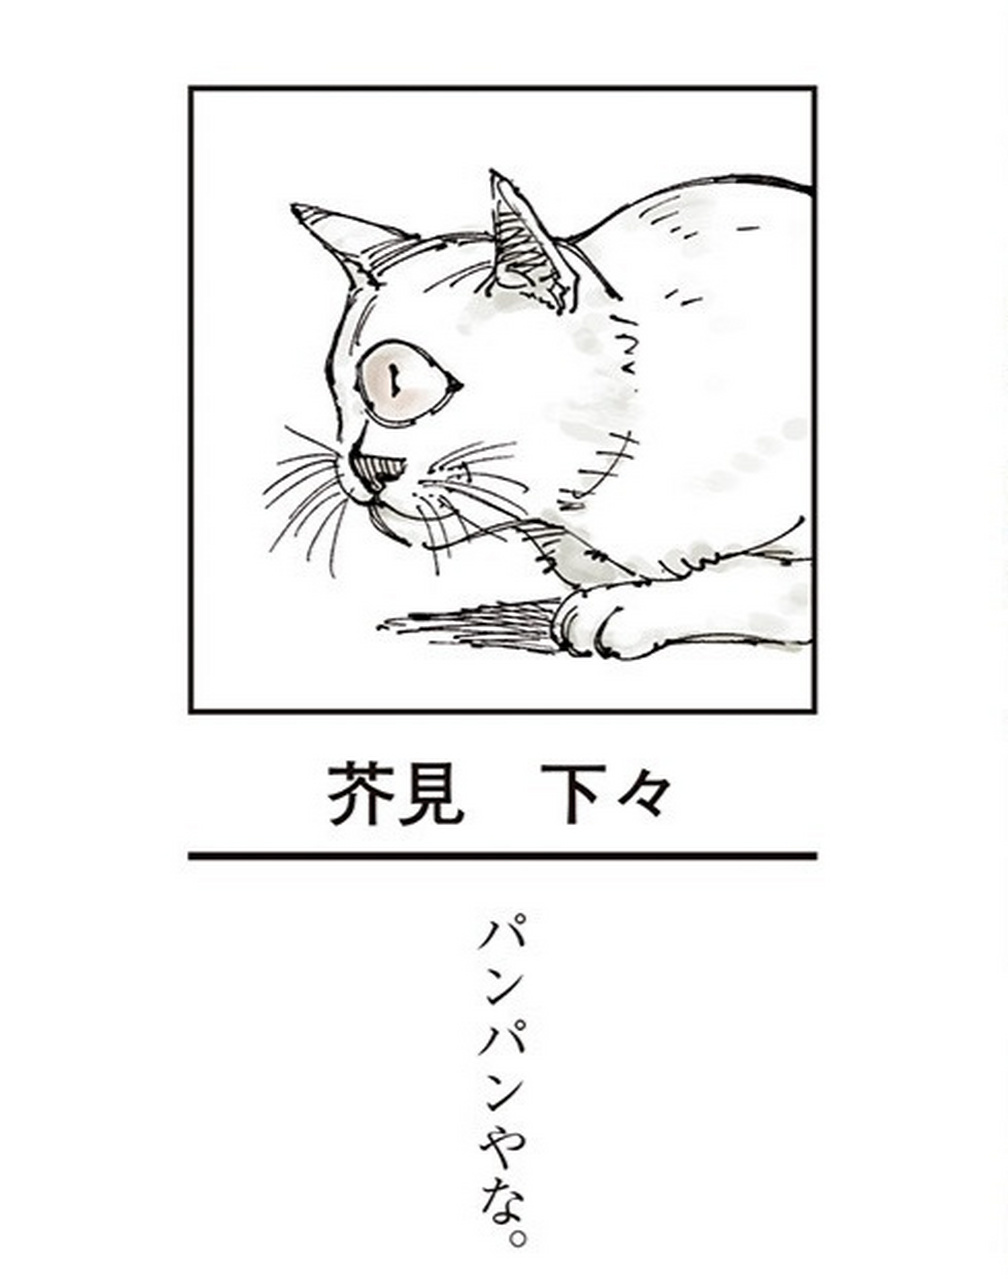 「咒术回战」芥见下下 最新自画像:独眼猫